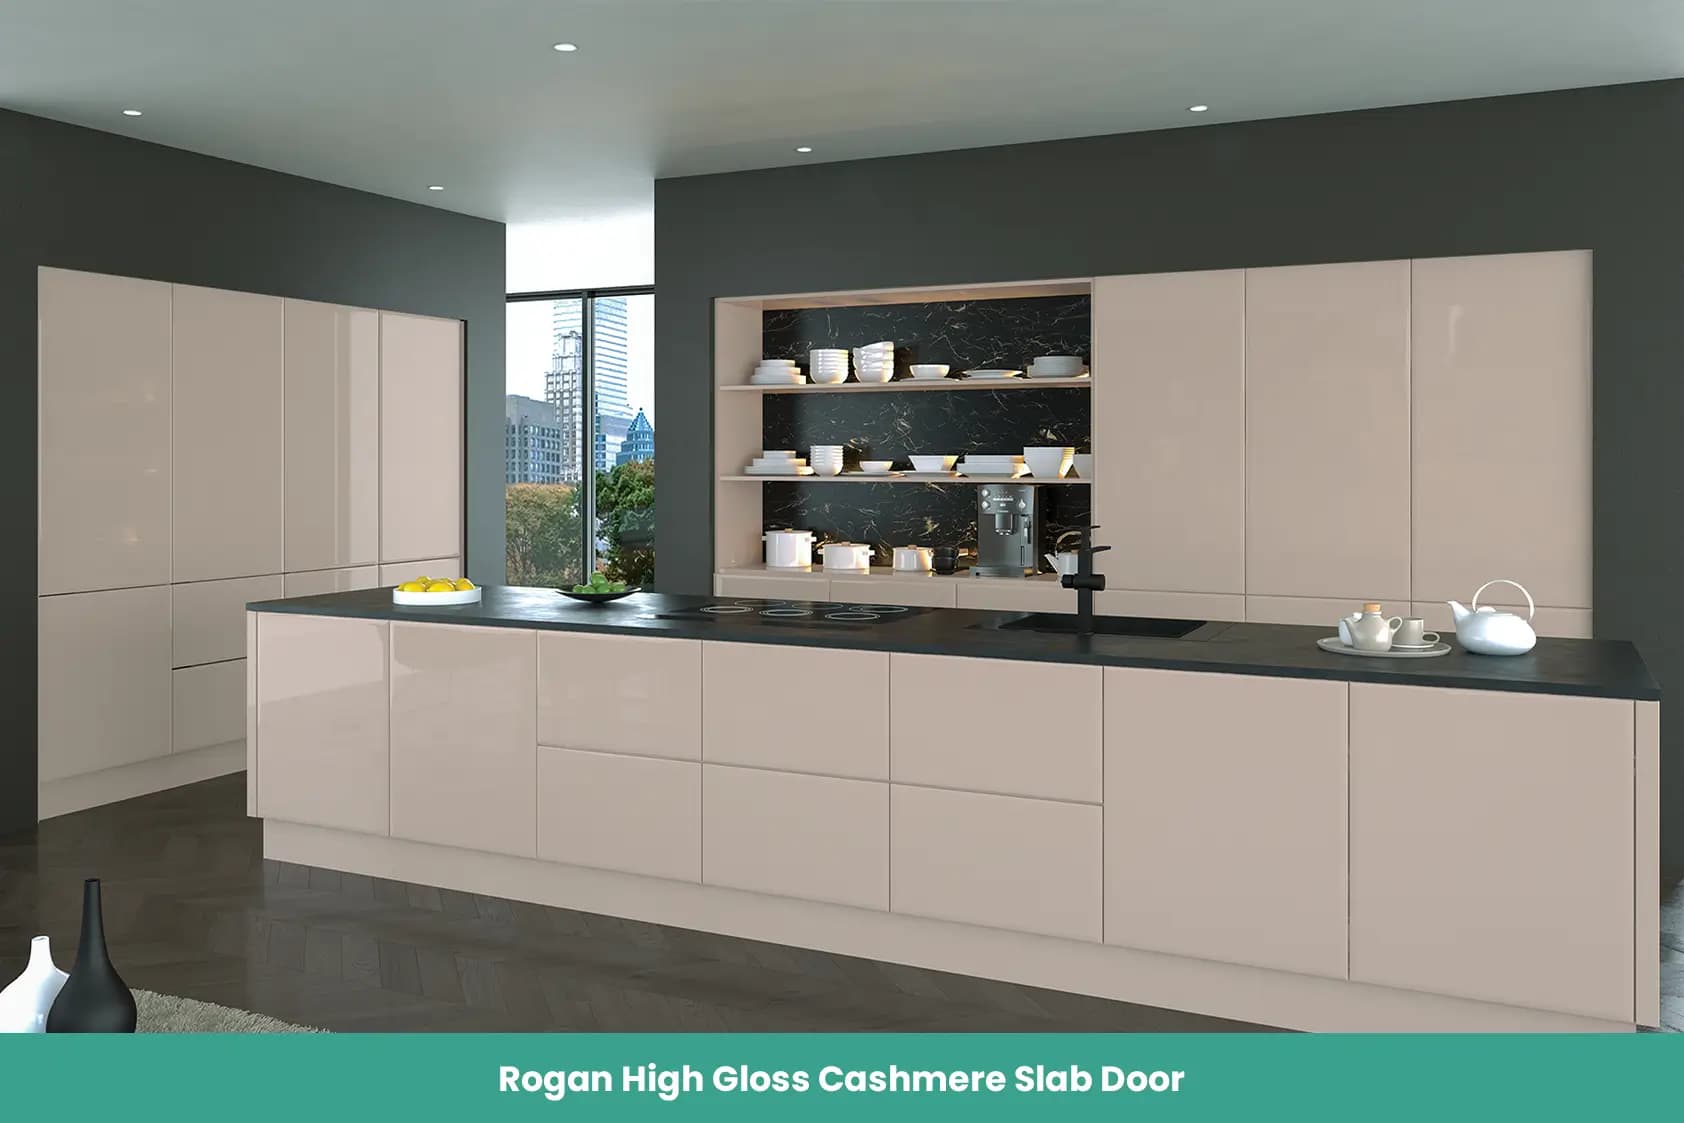 Rogan High Gloss Cashmere Slab Door Kitchen